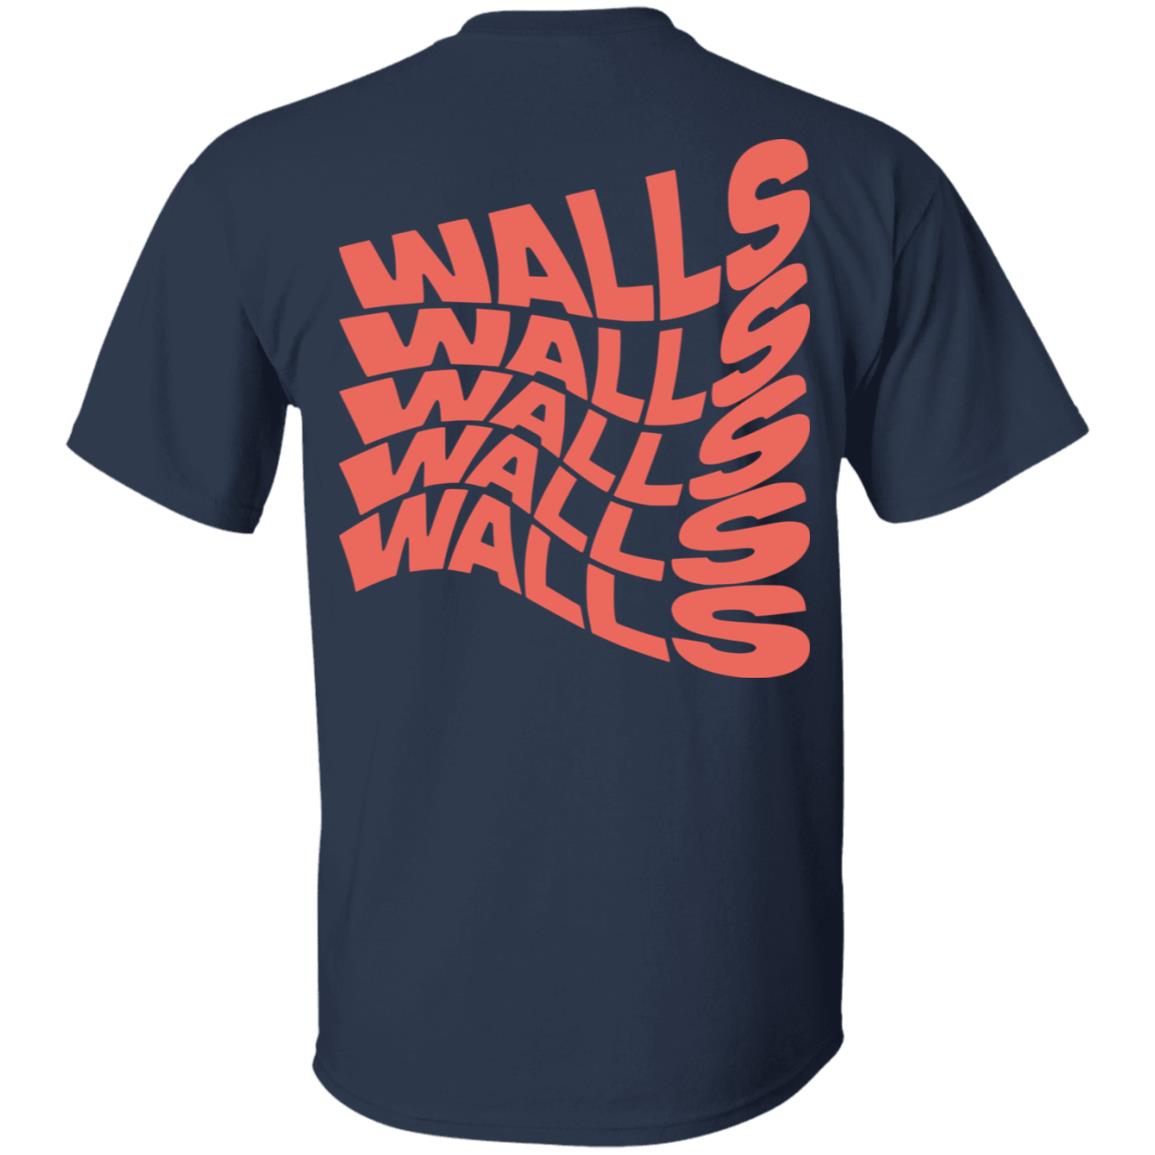 Louis Tomlinson Walls T-Shirt